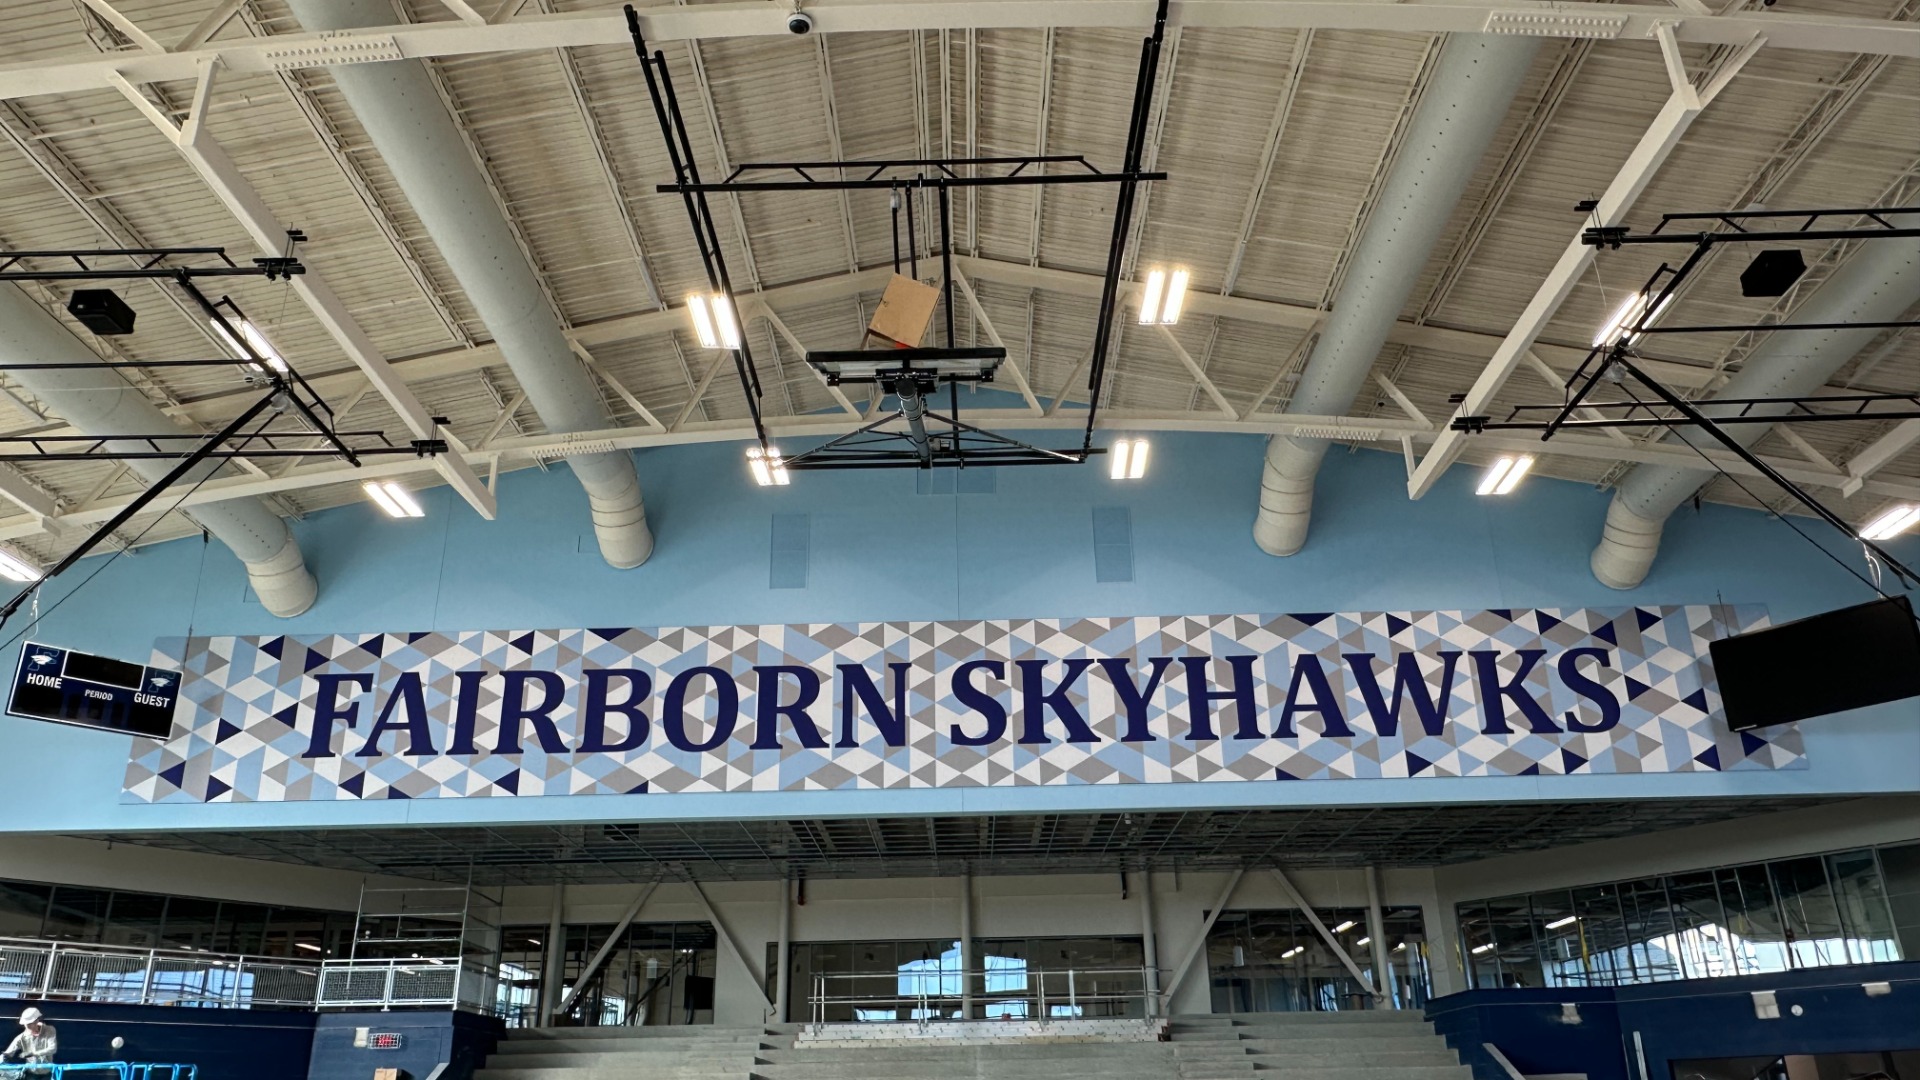 Slide 0 - Graphics in Skyhawk Arena